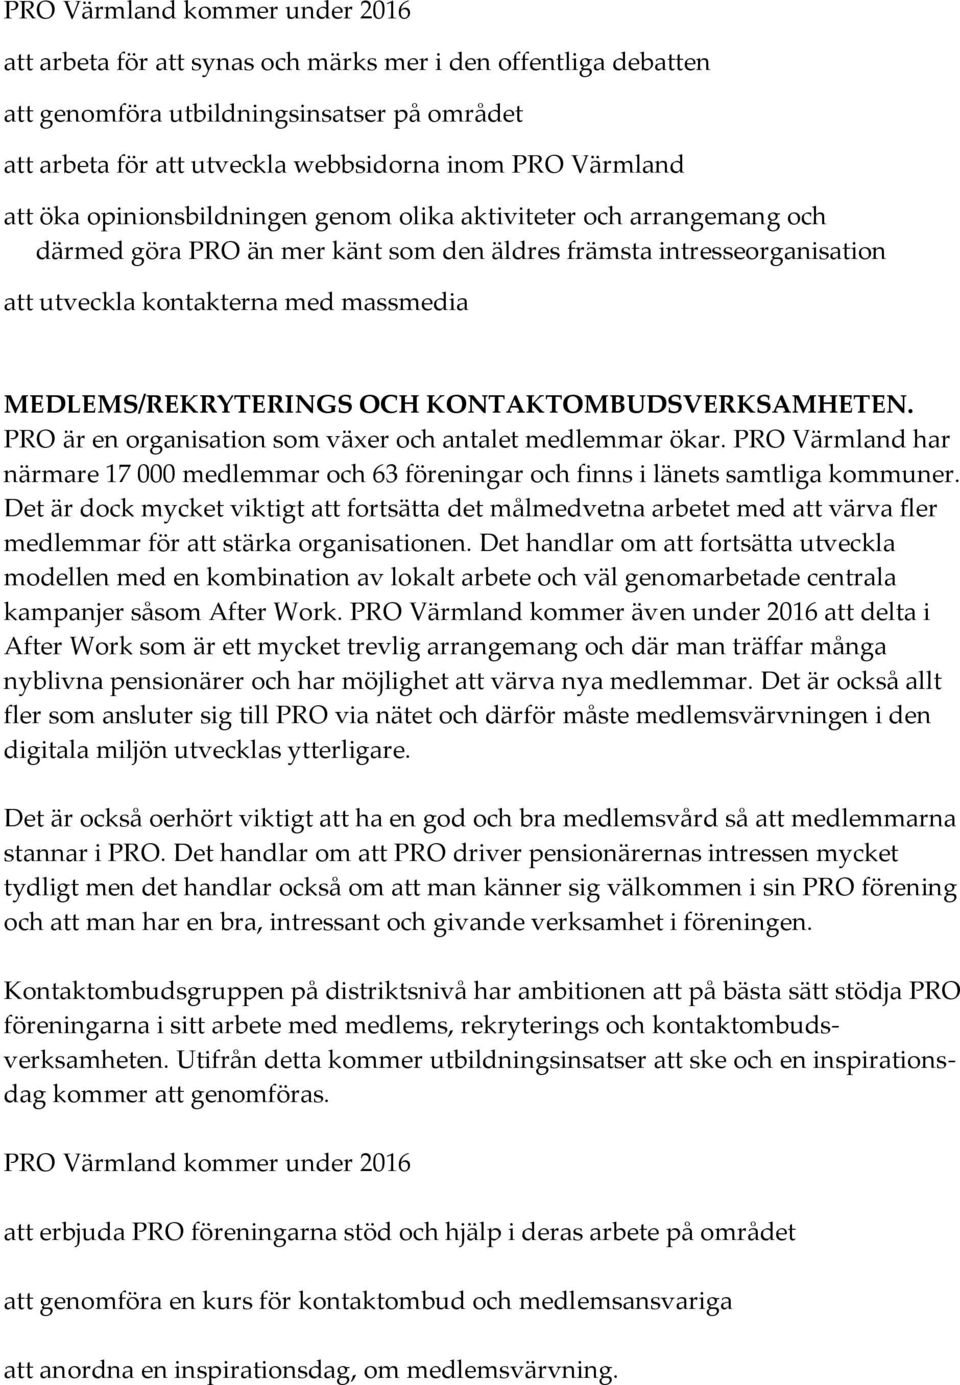 KONTAKTOMBUDSVERKSAMHETEN. PRO är en organisation som växer och antalet medlemmar ökar. PRO Värmland har närmare 17 000 medlemmar och 63 föreningar och finns i länets samtliga kommuner.